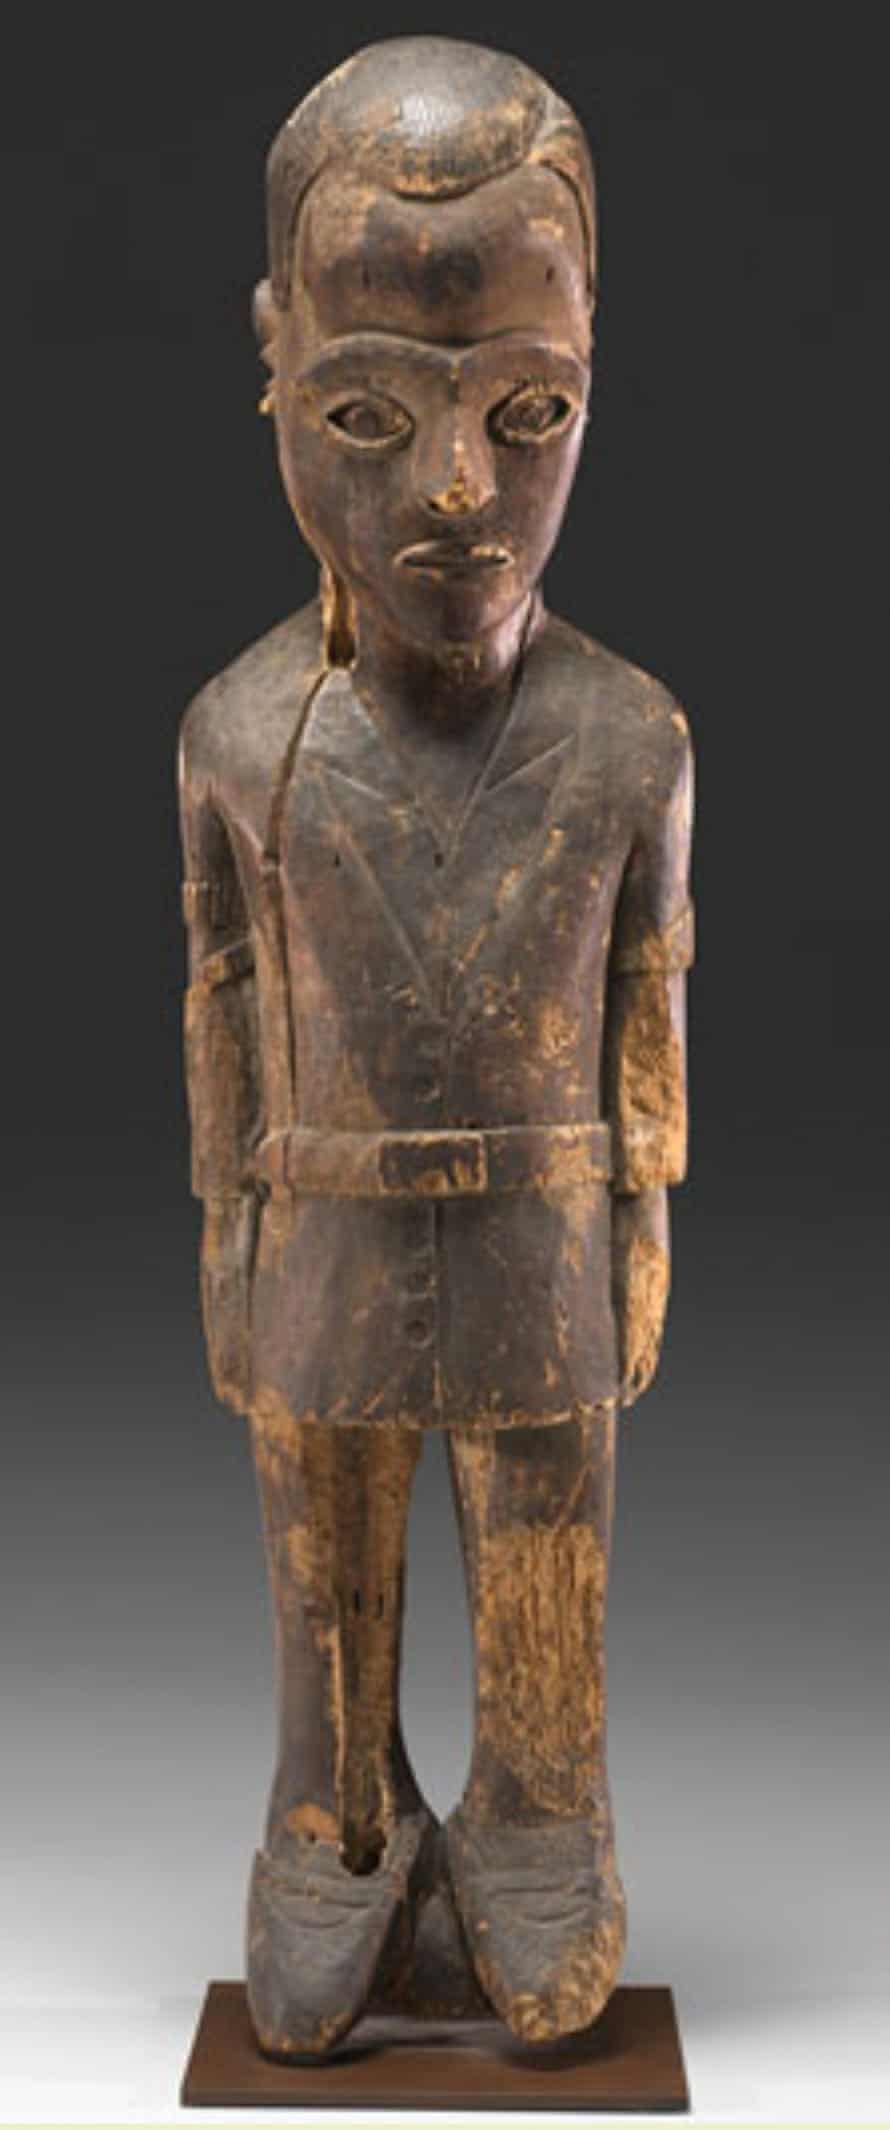 Diviner's Figure representing Maximilien Balot, 1931 Pende culture.